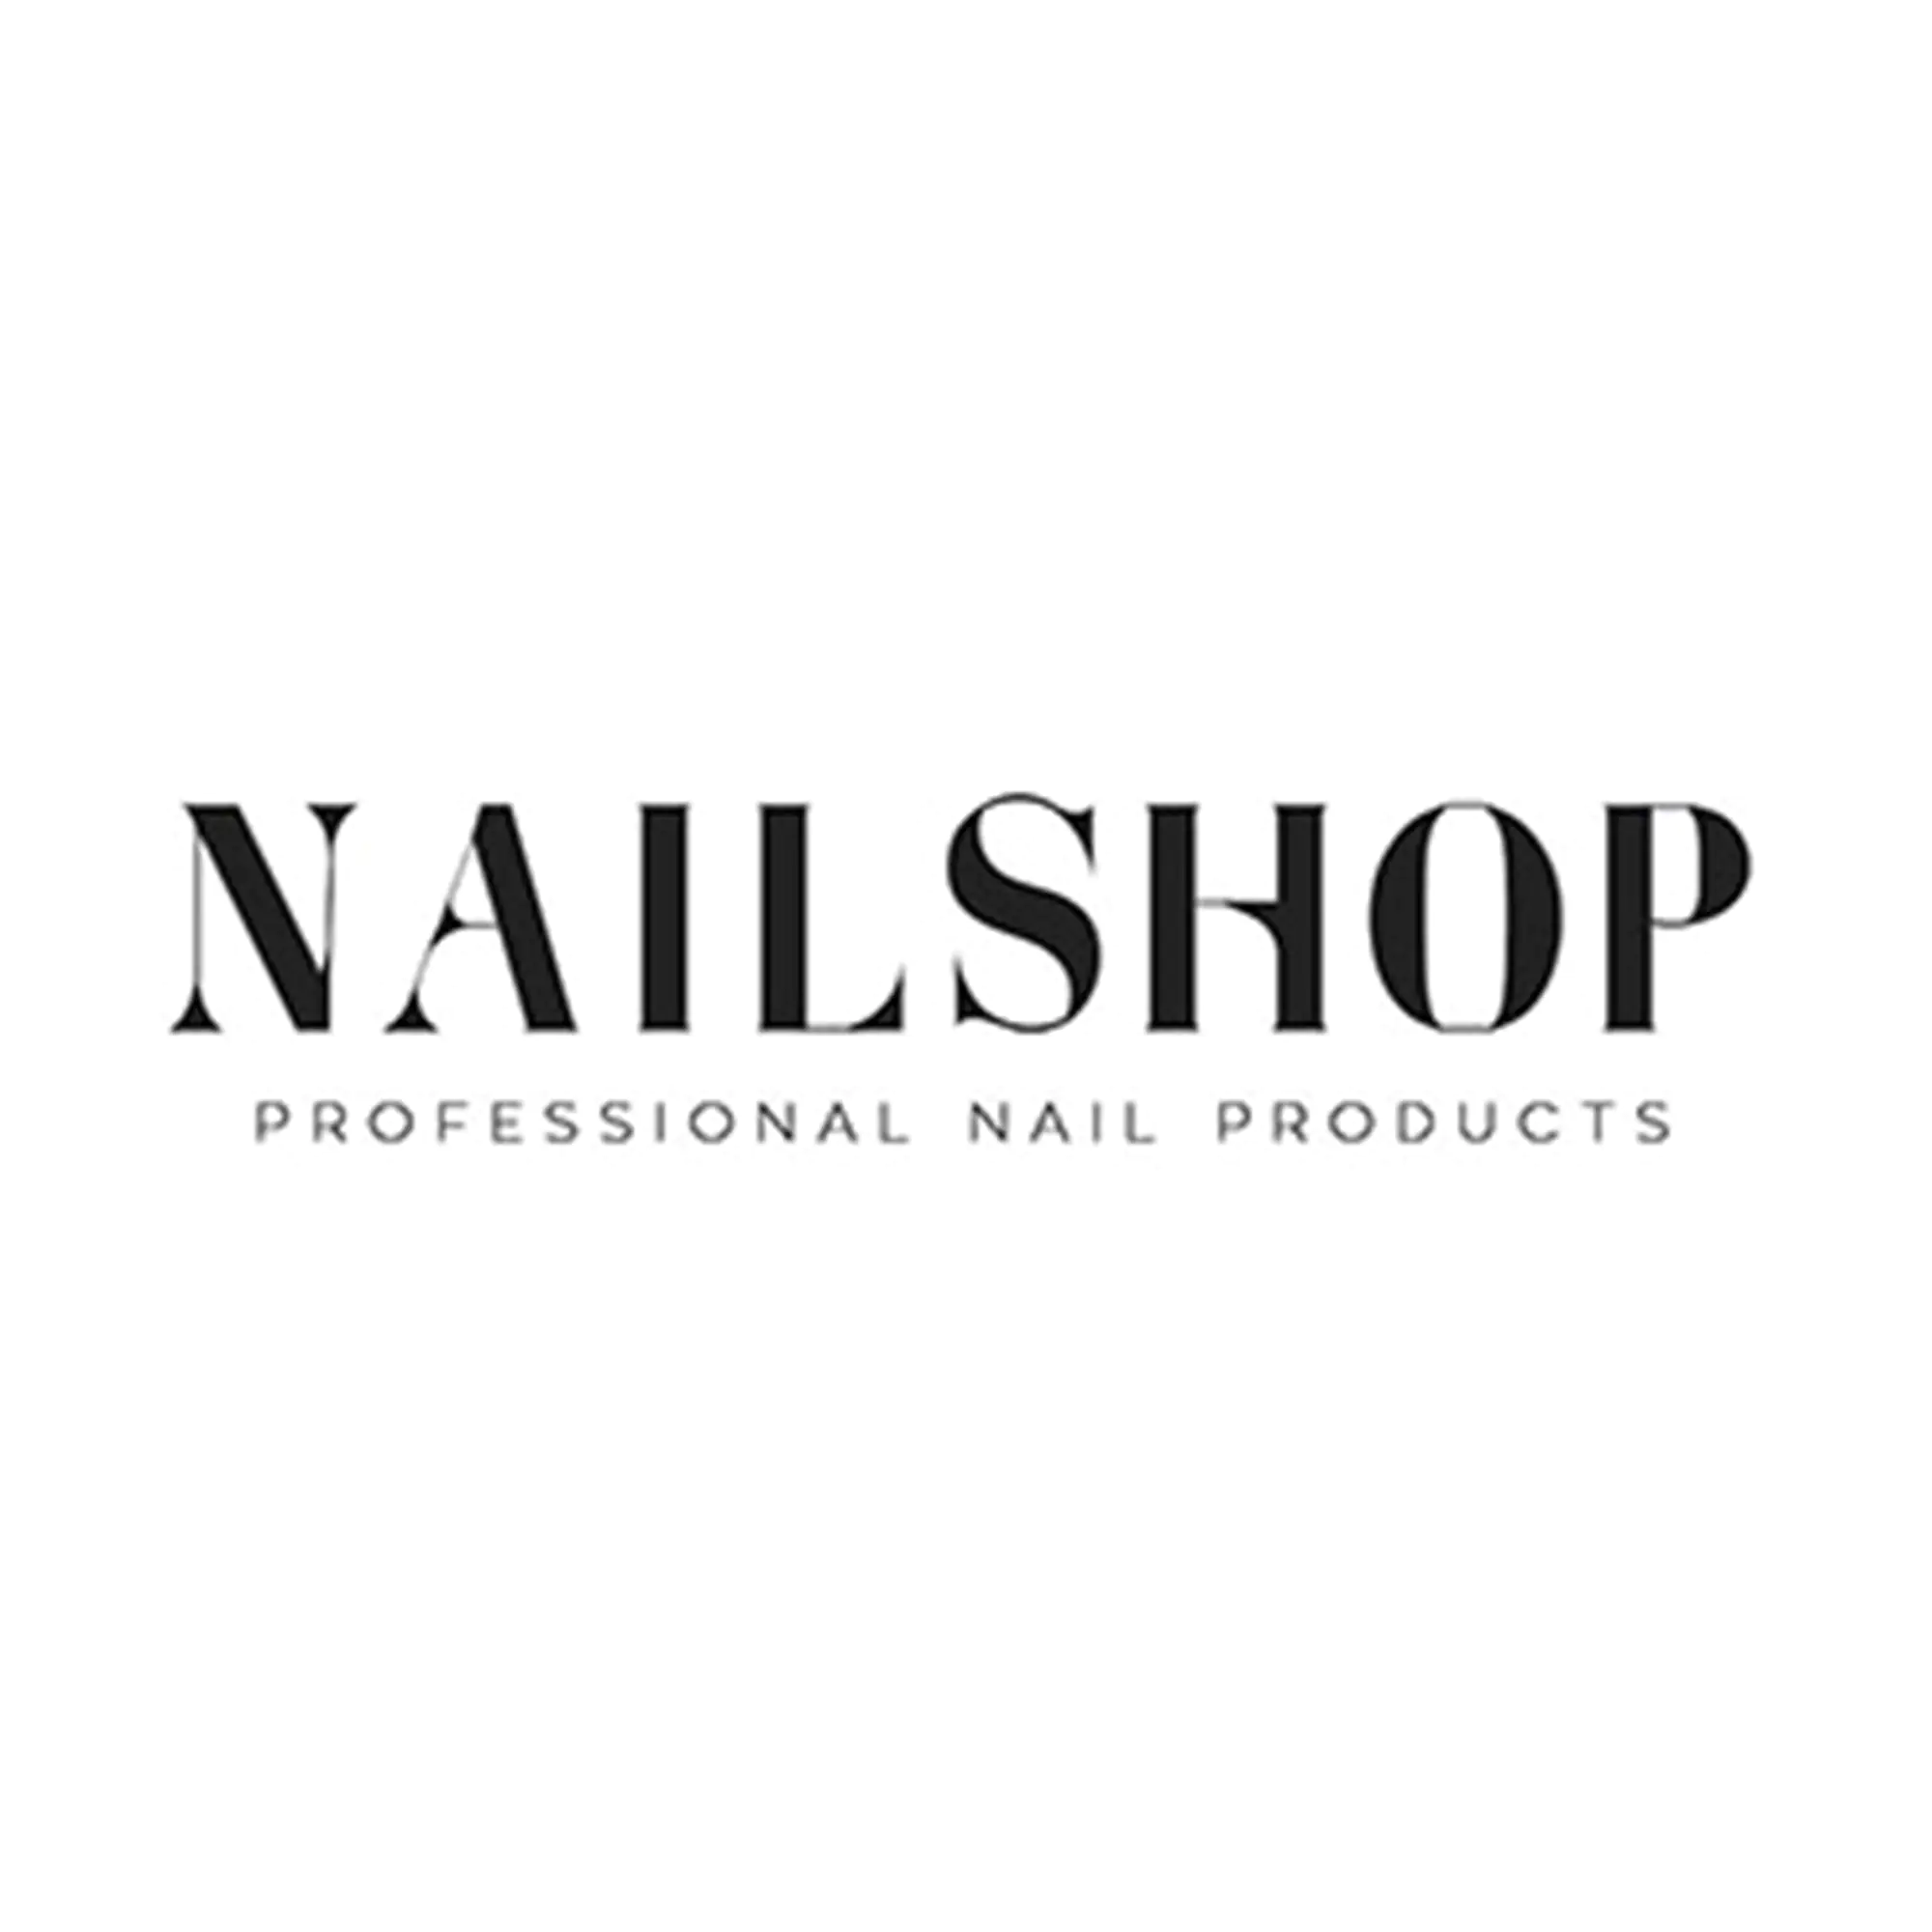 Nailshop Cuticle Remover | Femme Fatale - Femme Fatale - 